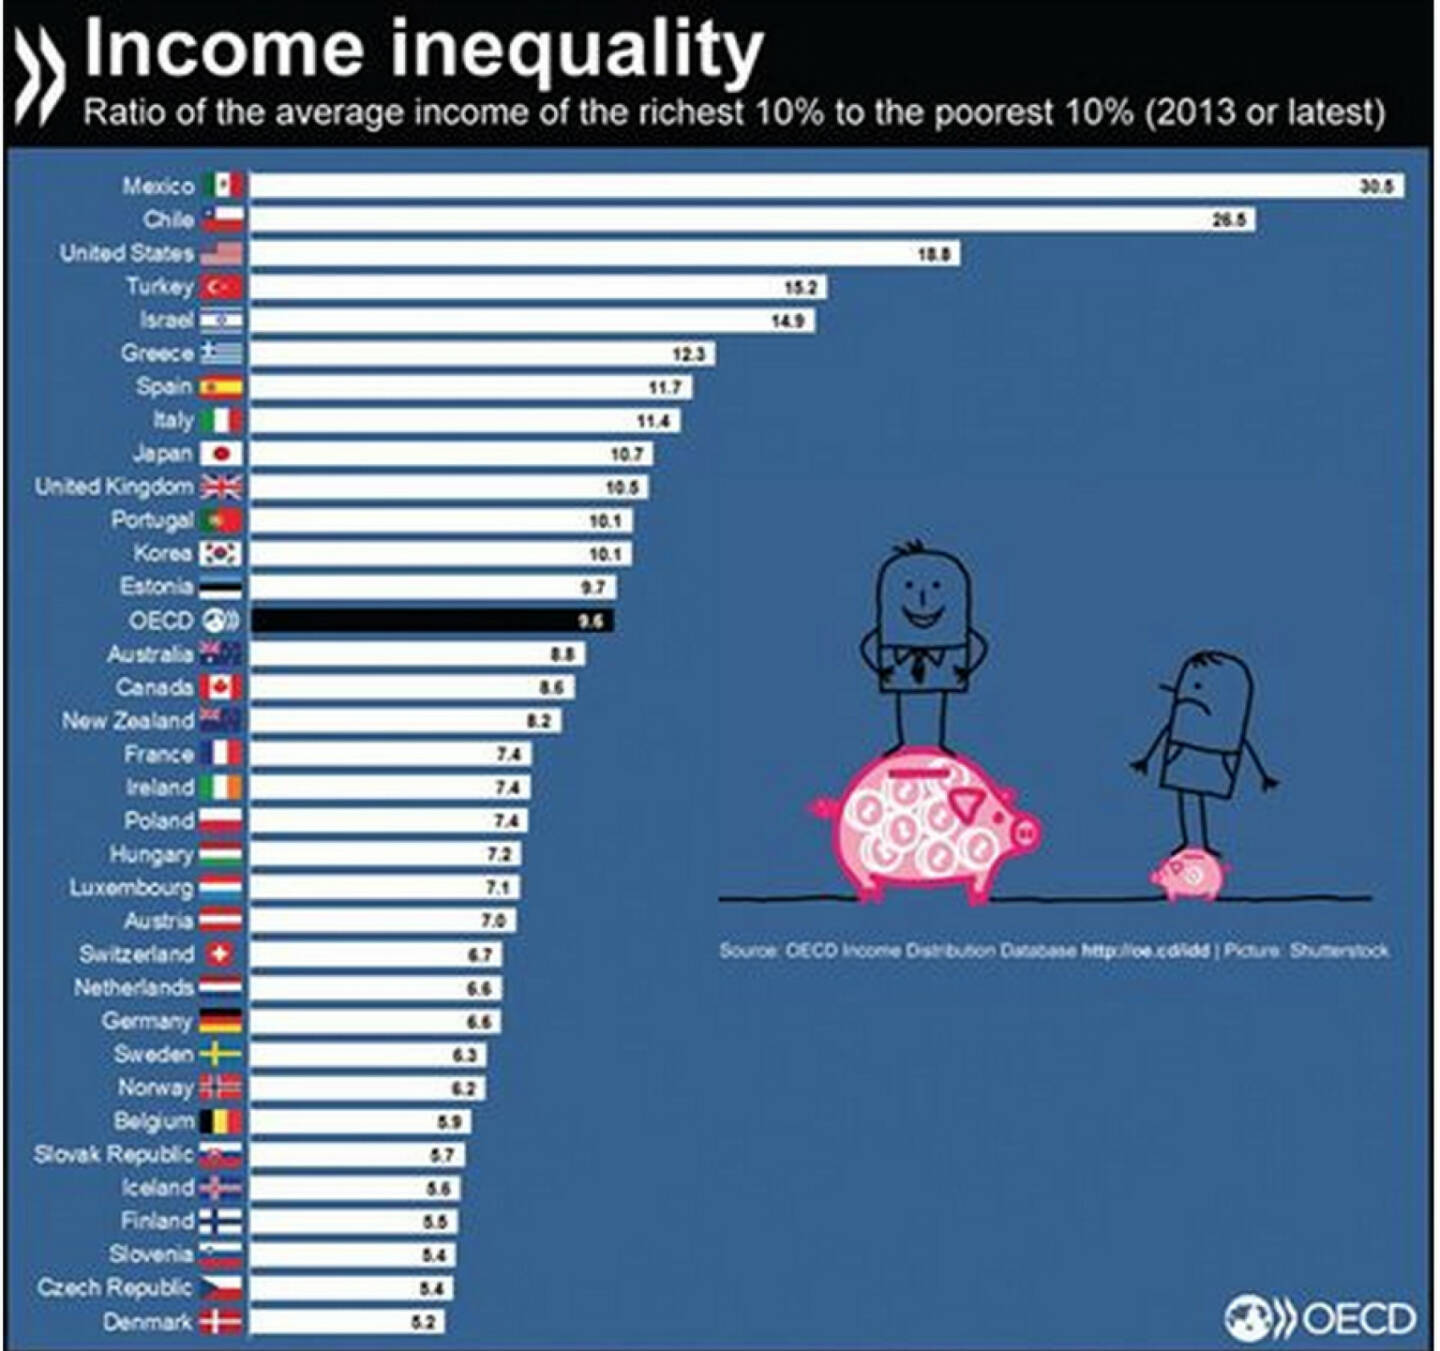 In der OECD verdienen die reichsten 10% der Bevölkerung im Durchschnitt zehn Mal so viel wie die ärmsten 10%. In welchen Ländern ist die Kluft zwischen Gering- und Gutverdienern am größten?
Mehr unter: http://bit.ly/1HYqCUY